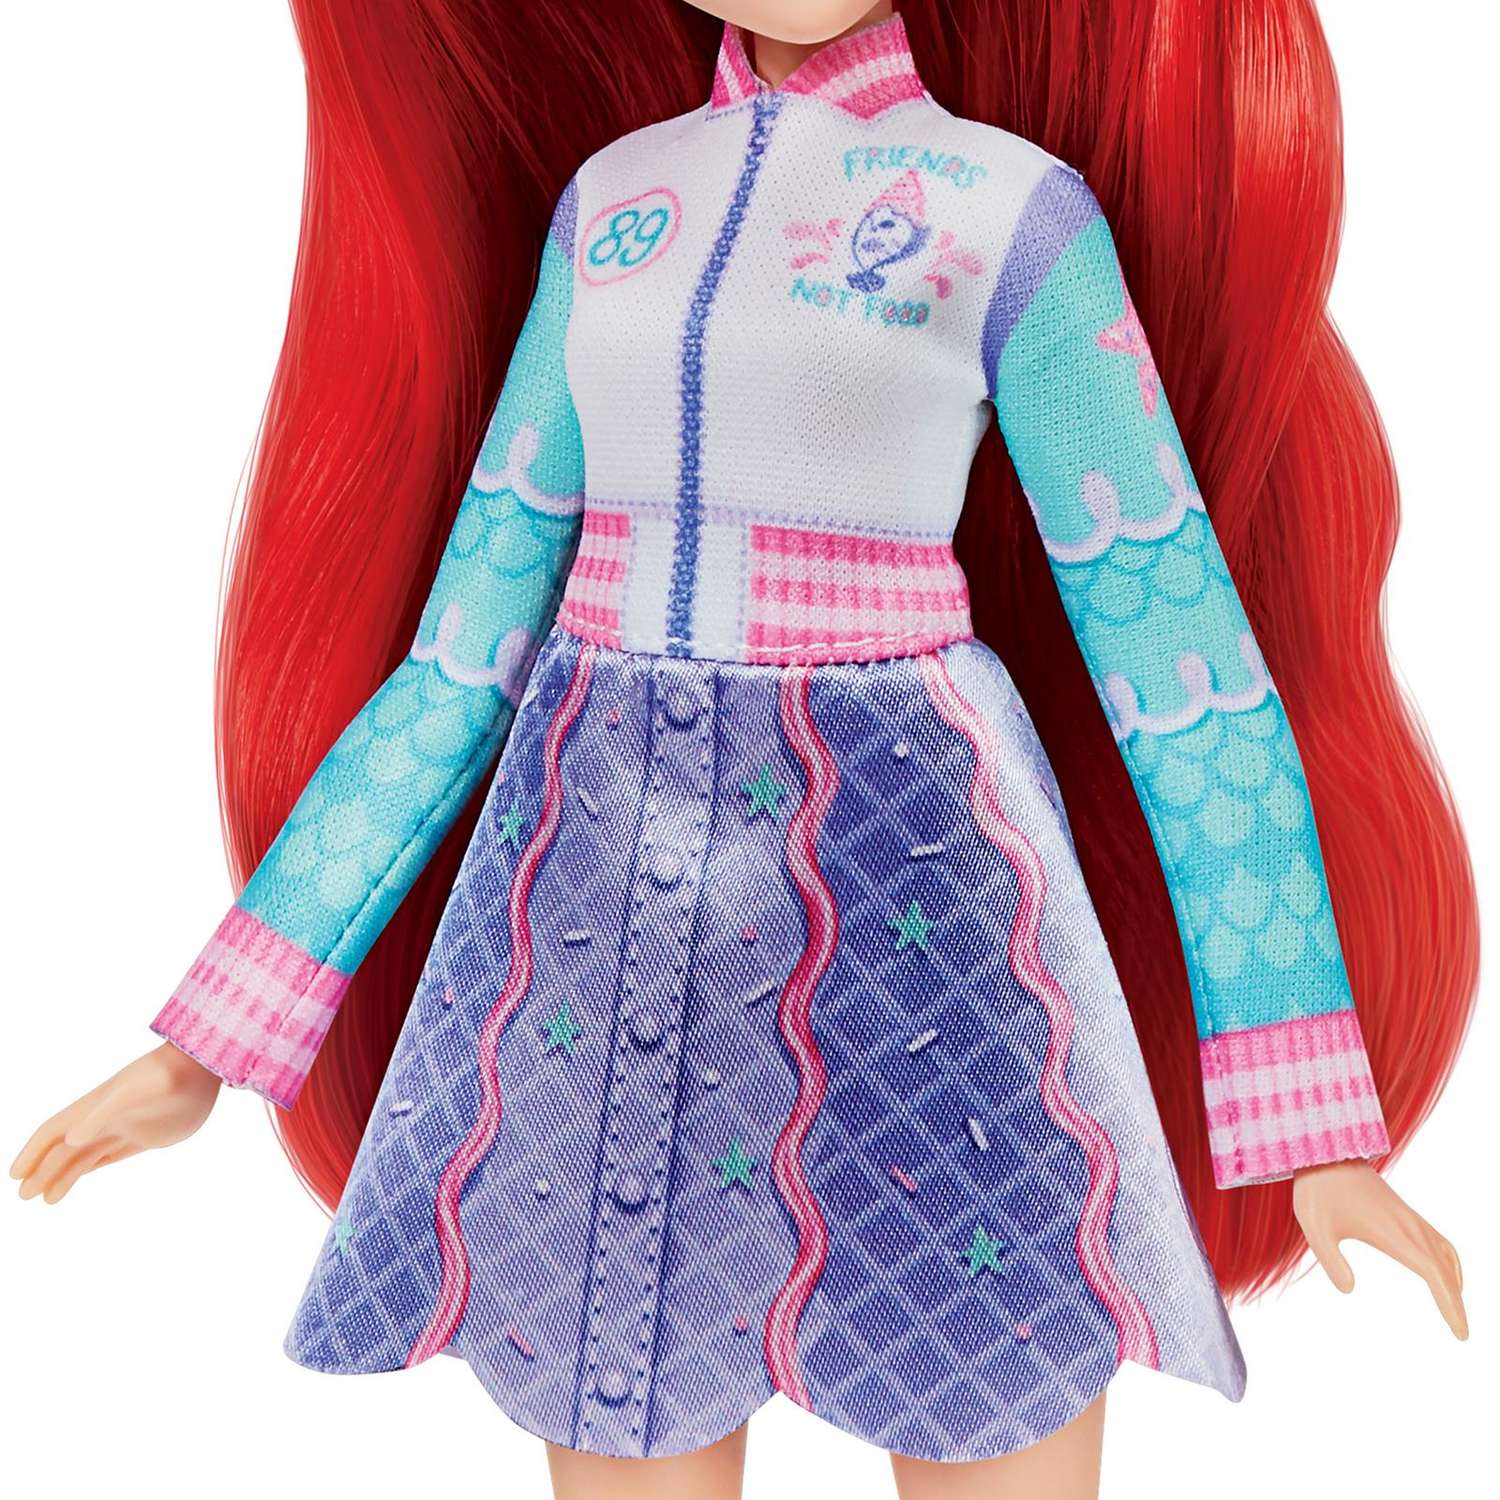 Кукла Disney Princess Disney Princess Hasbro Комфи Ариэль 2наряда F23665X0 F23665X0 - фото 8